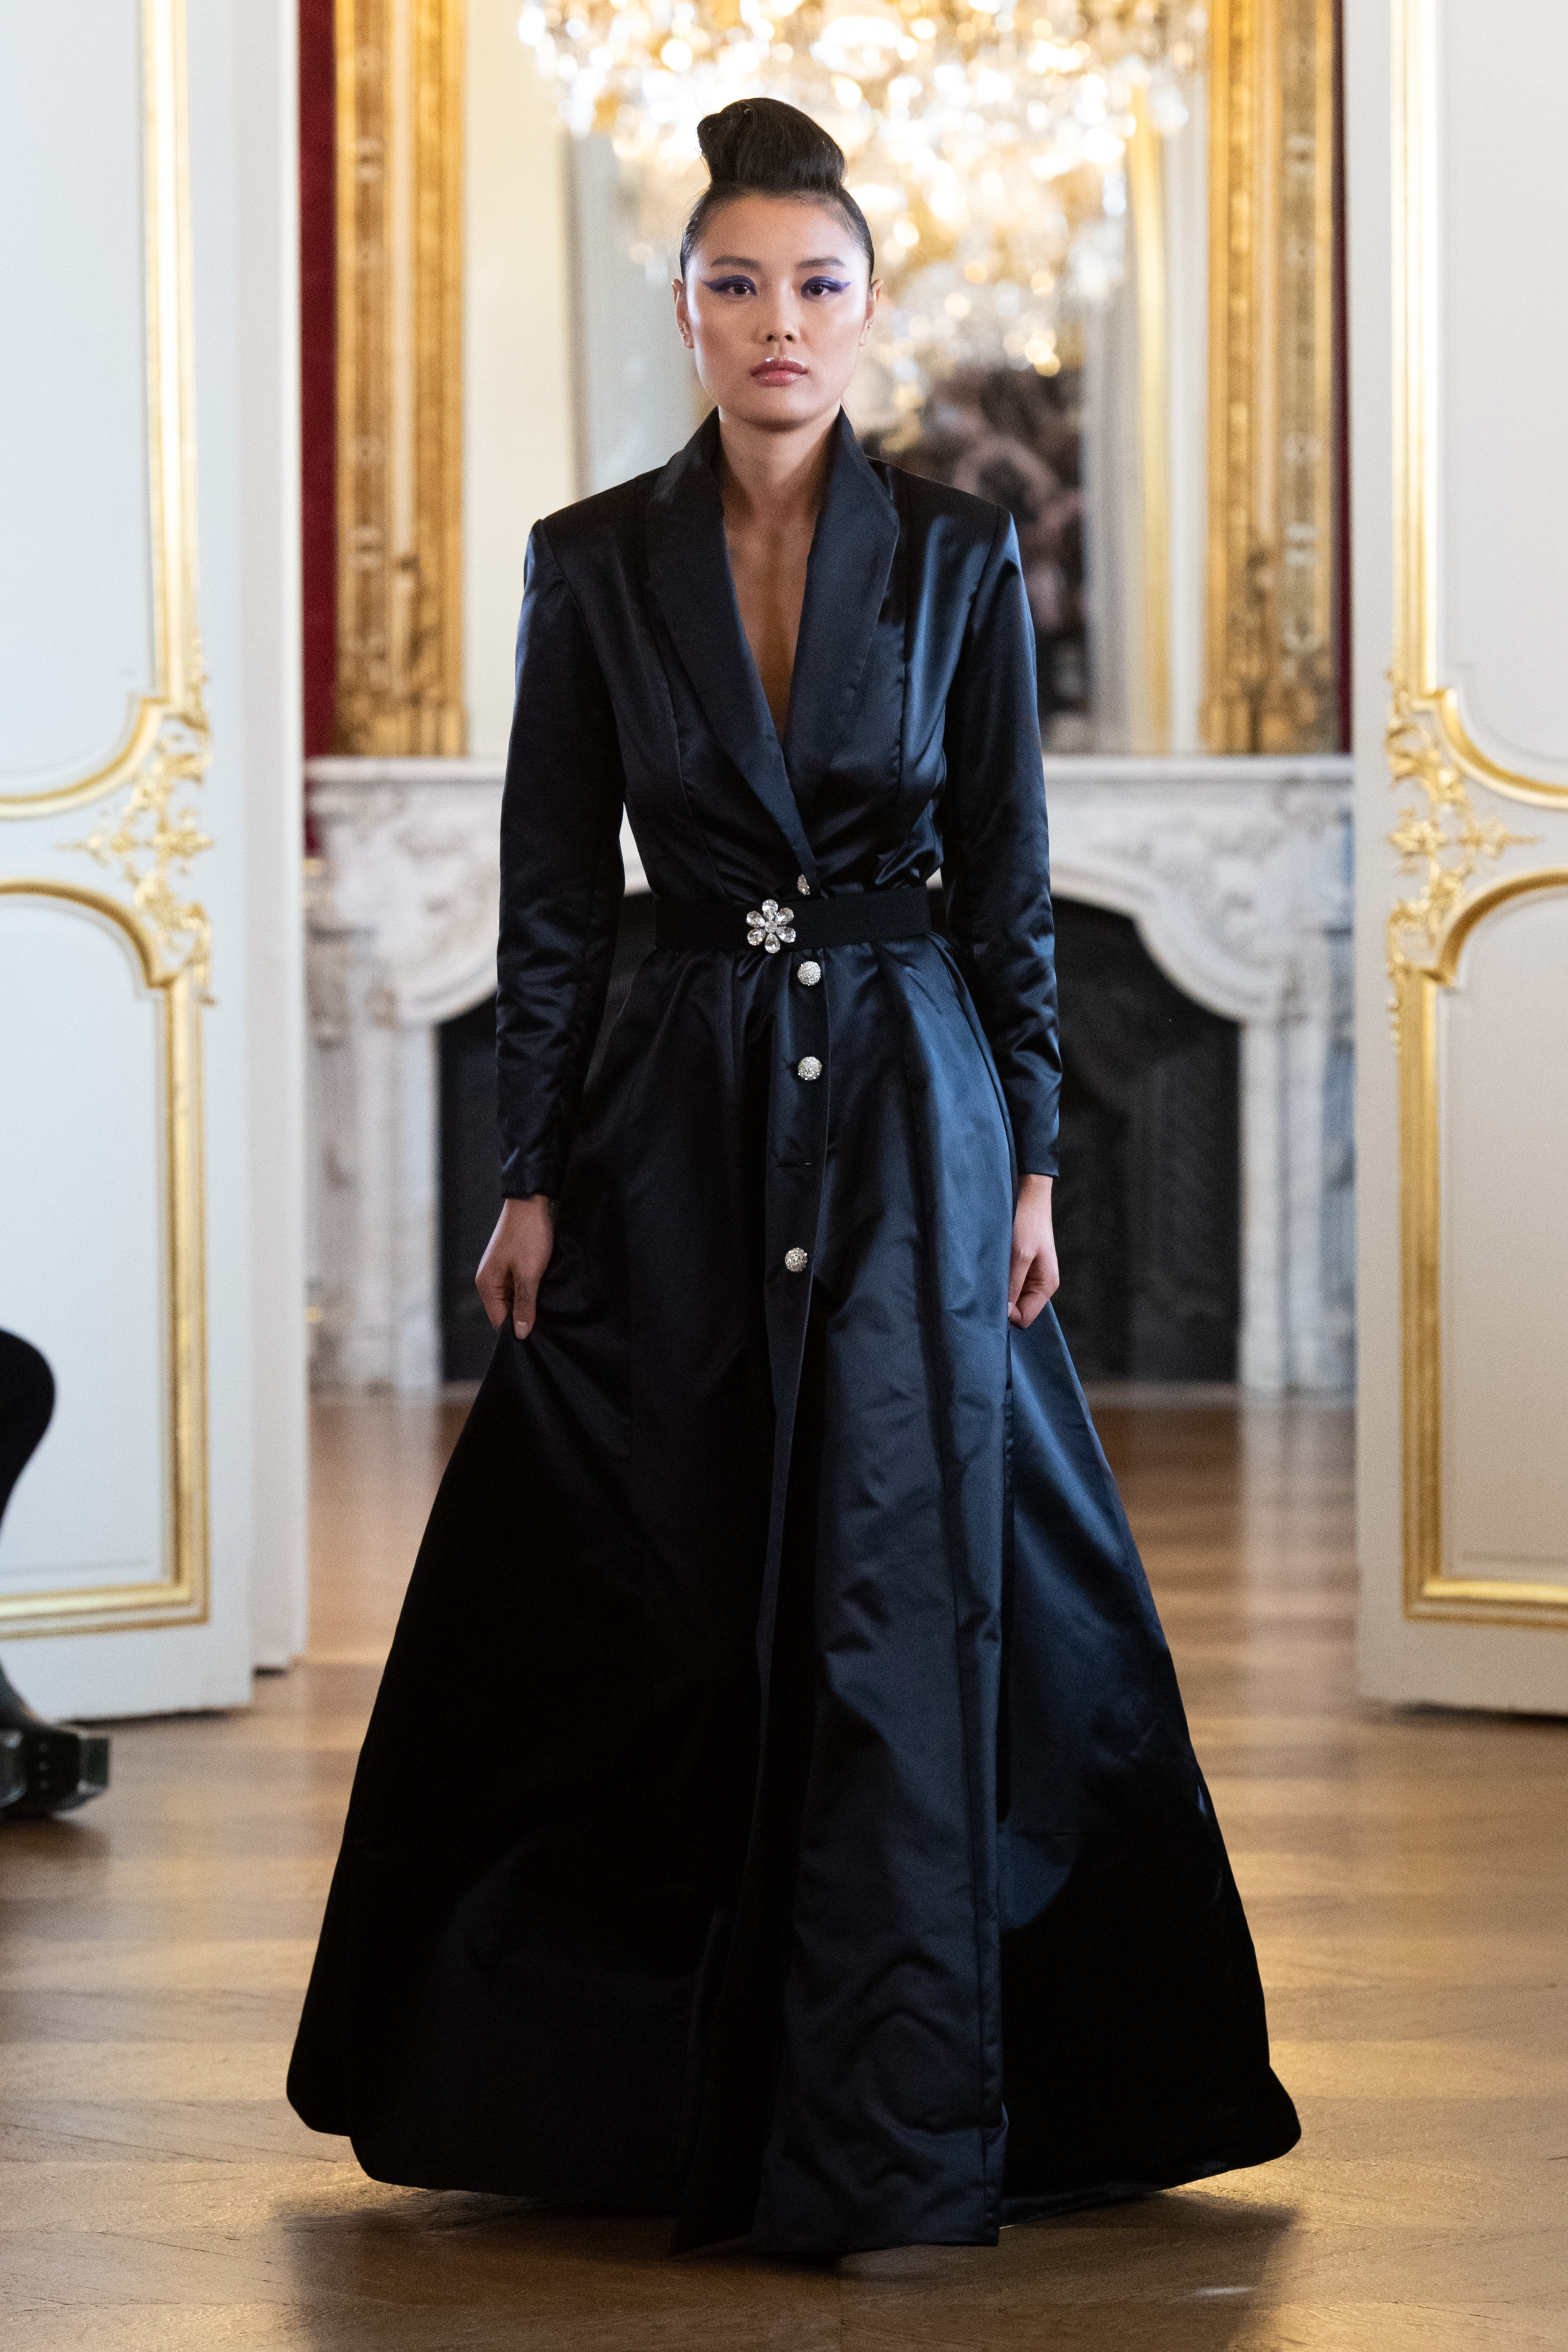 Défilé Fovari Haute Couture Paris